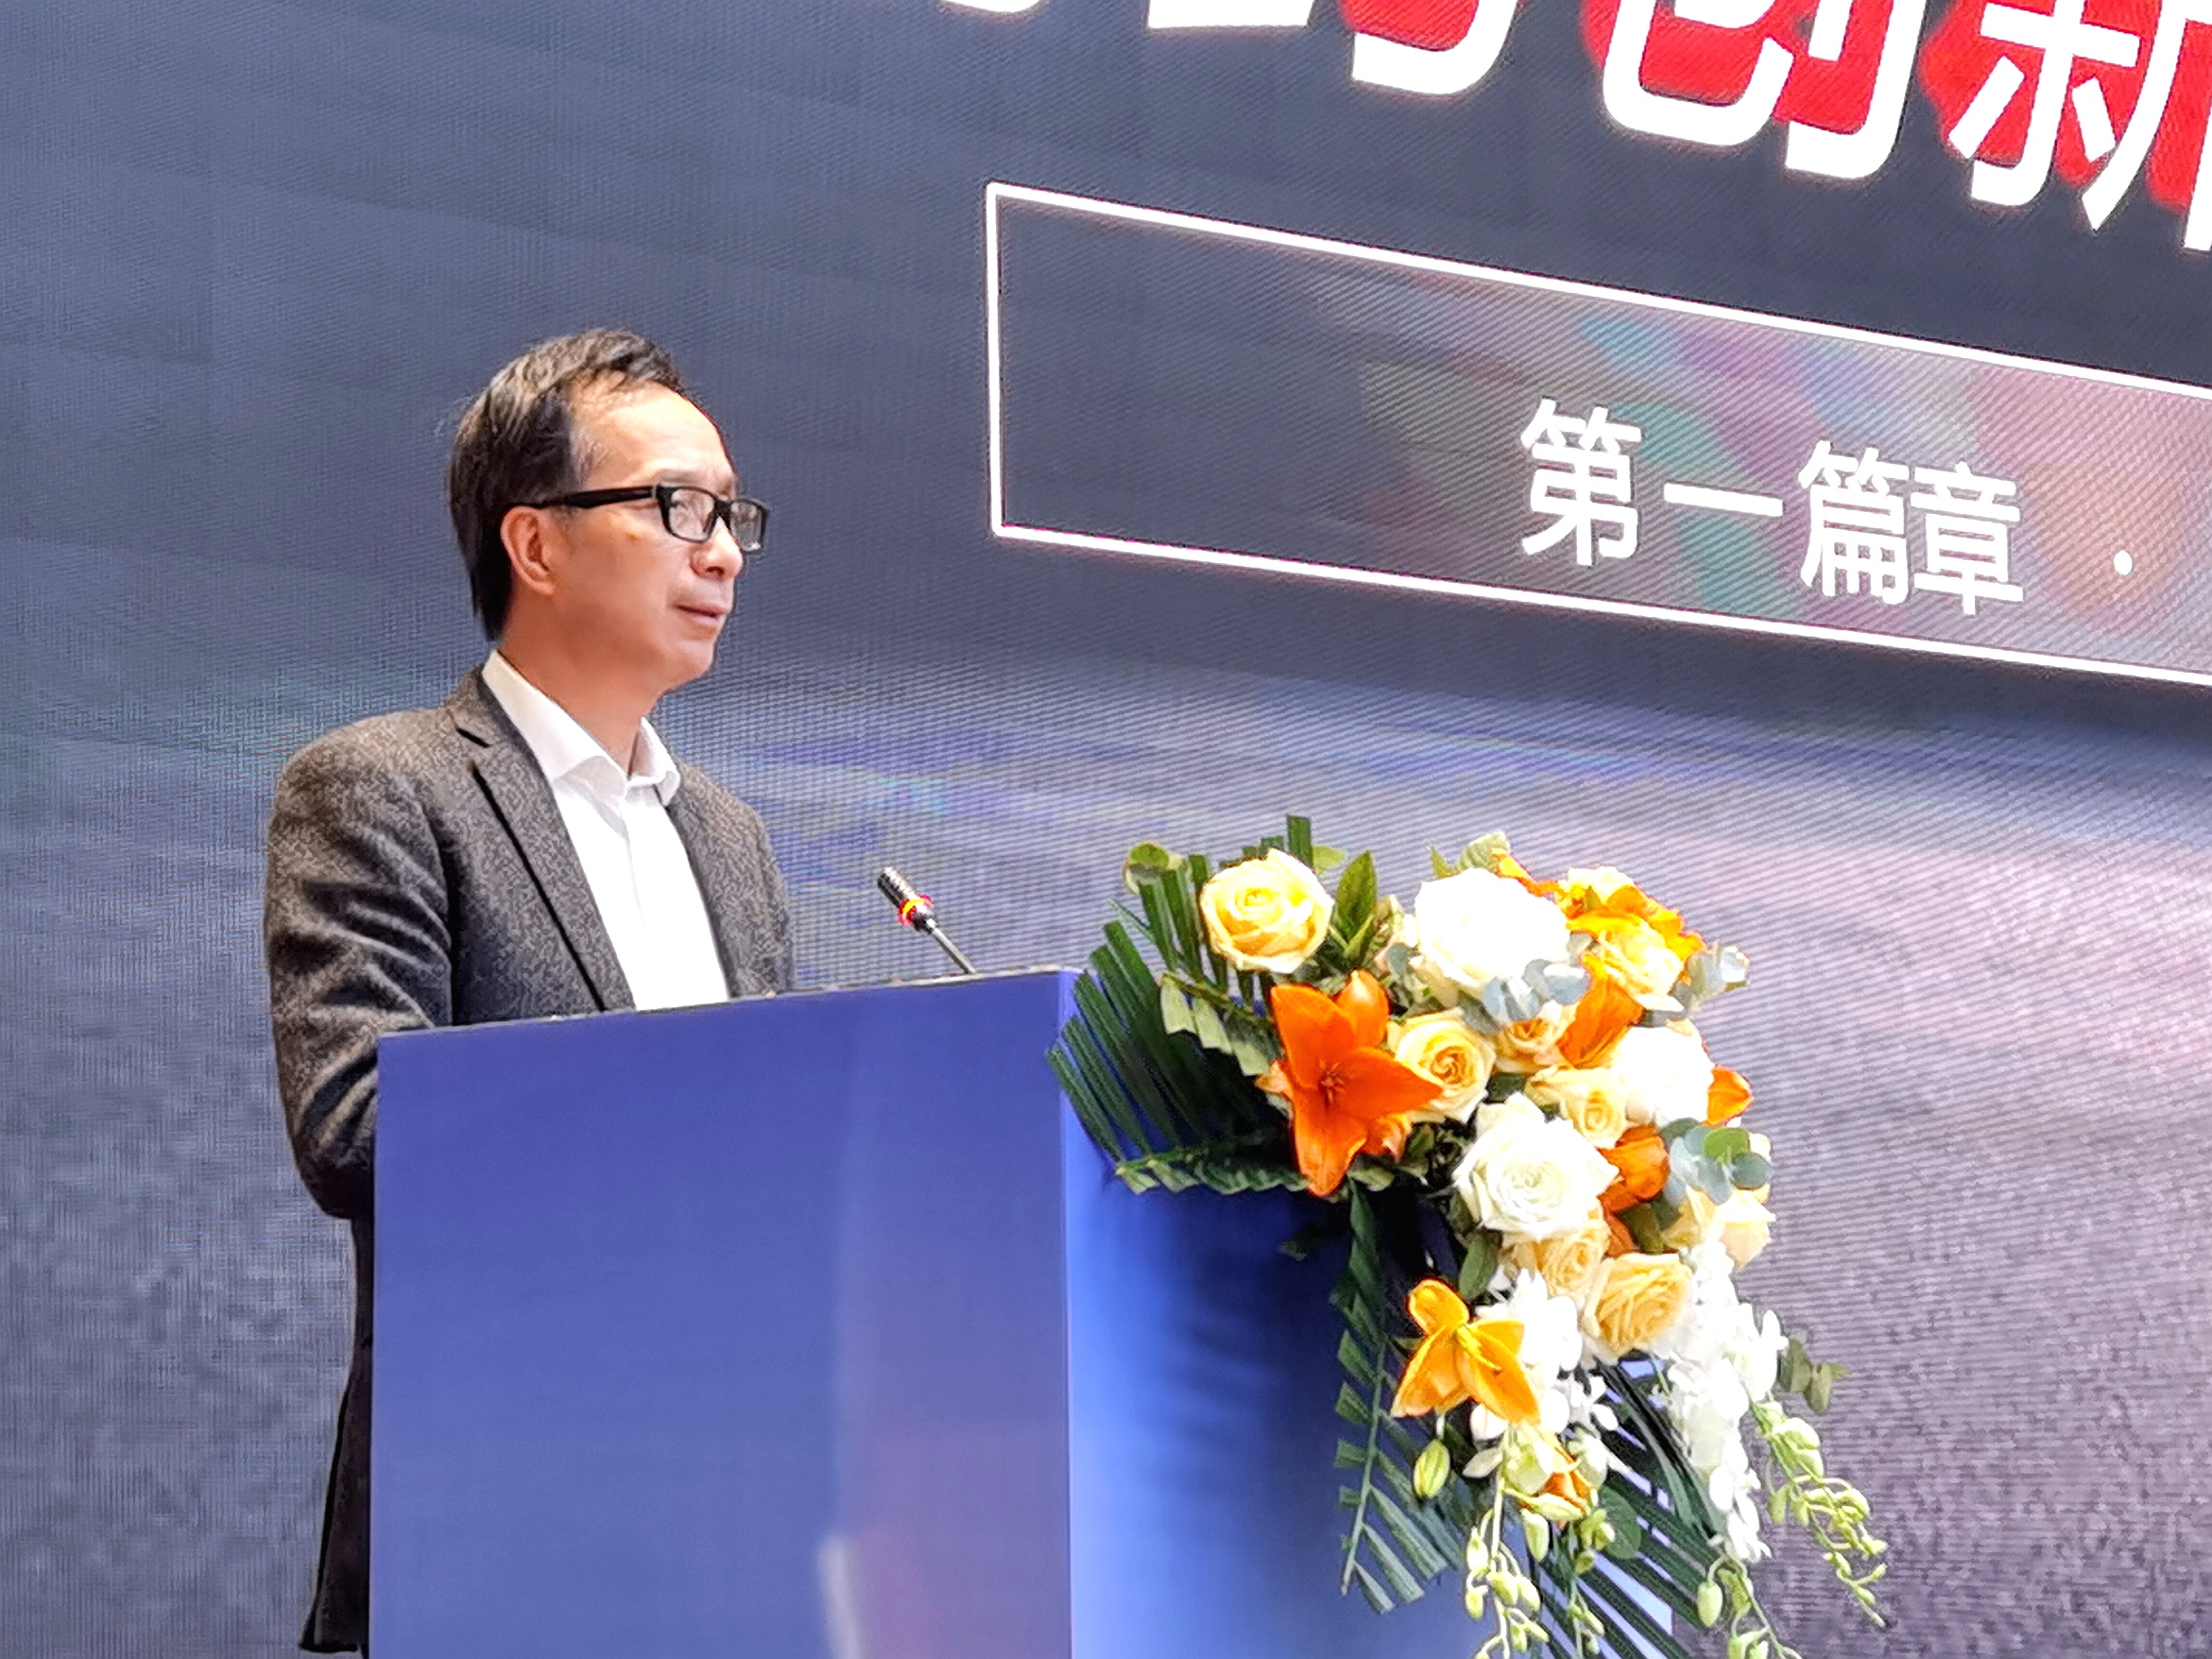 王金山董事长在渝药创新生态链建设大会发表主题演讲